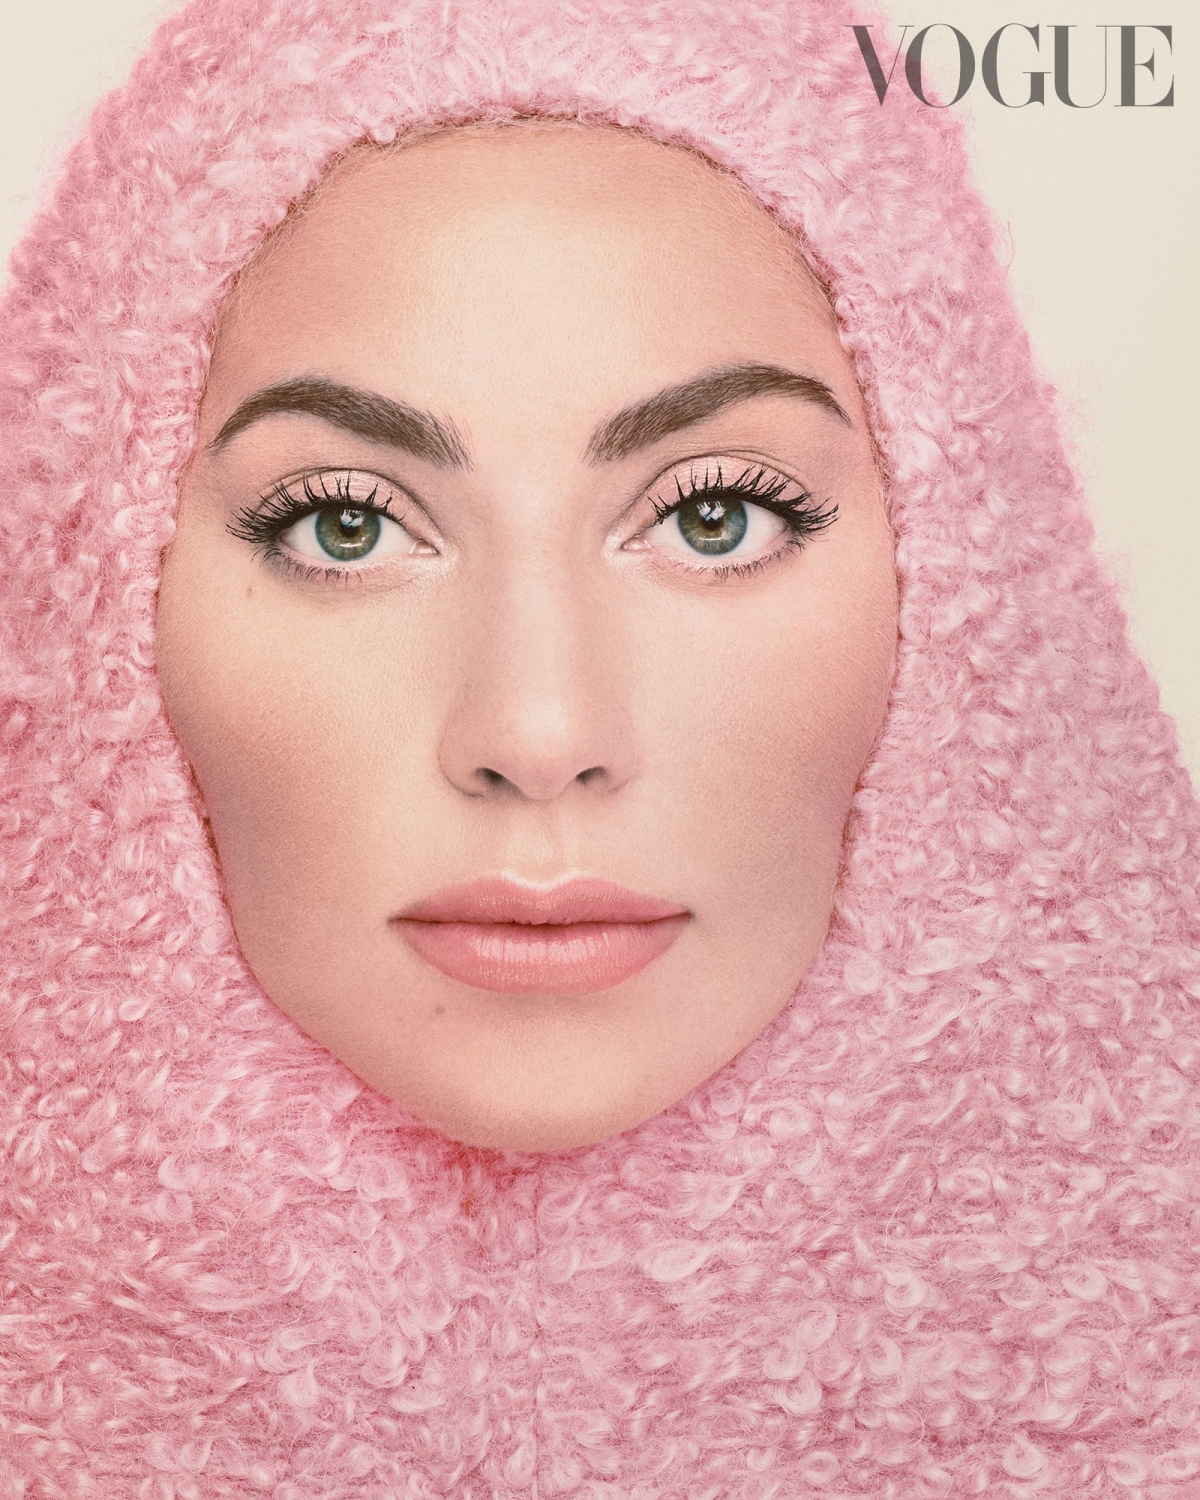 Trên bìa tạp chí Vogue Italy số tháng 11, ngôi sao nhạc pop thể hiện vẻ nữ tính với phong cách trang điểm tone hồng nhạt ton sur ton với áo và mũ len. 